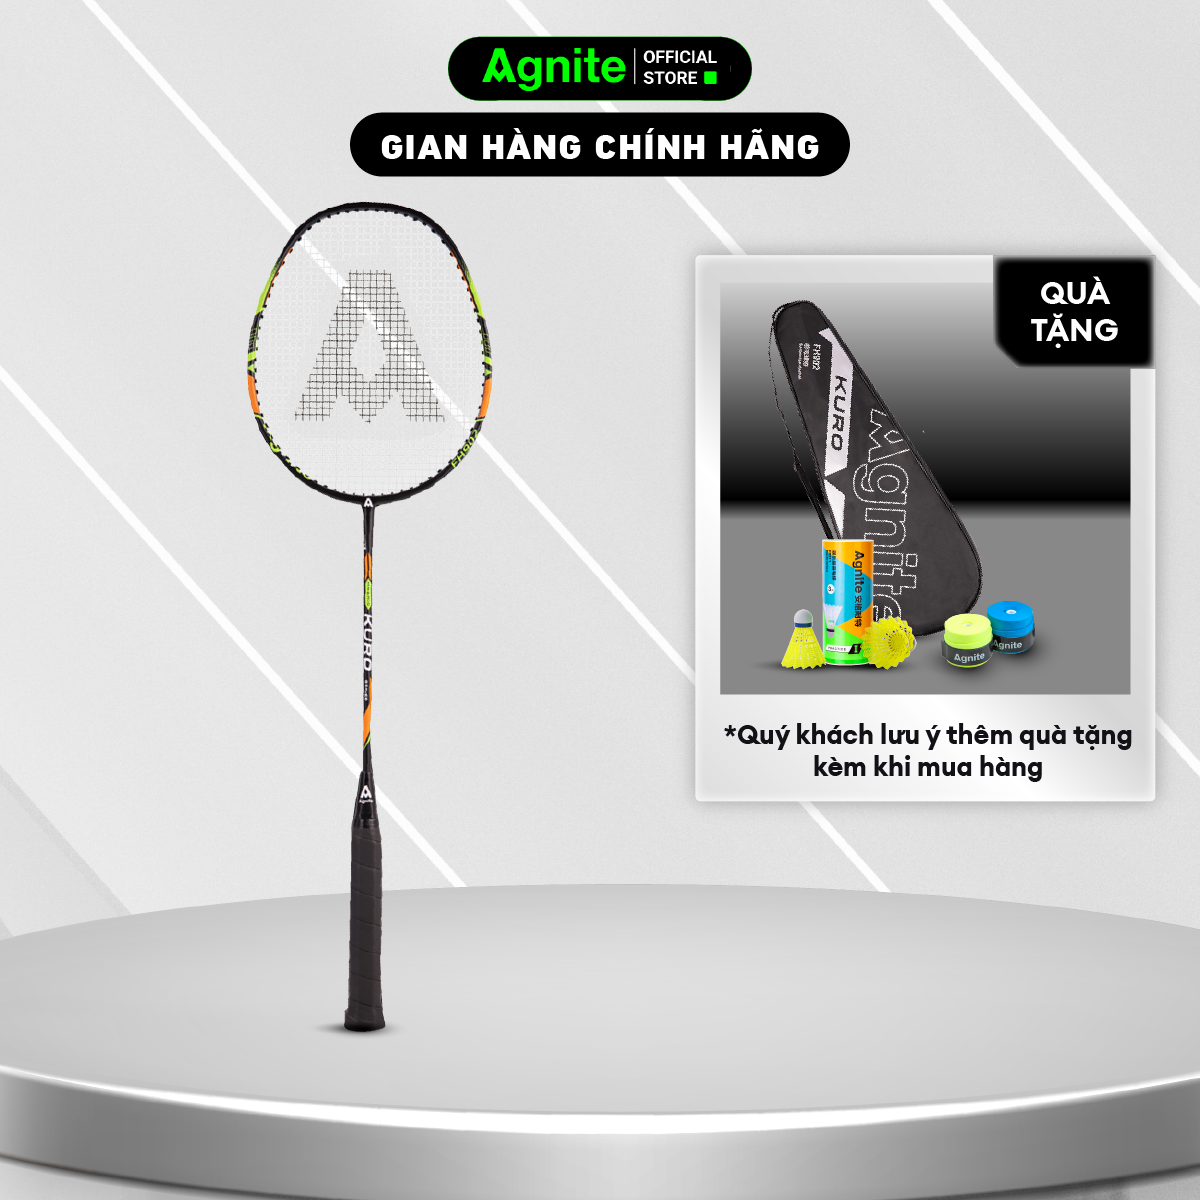 1 chiếc vợt đơn thiết kế mới, bền, đẹp, siêu nhẹ chính hãng Agnite tặng kèm túi đựng vợt - FH902